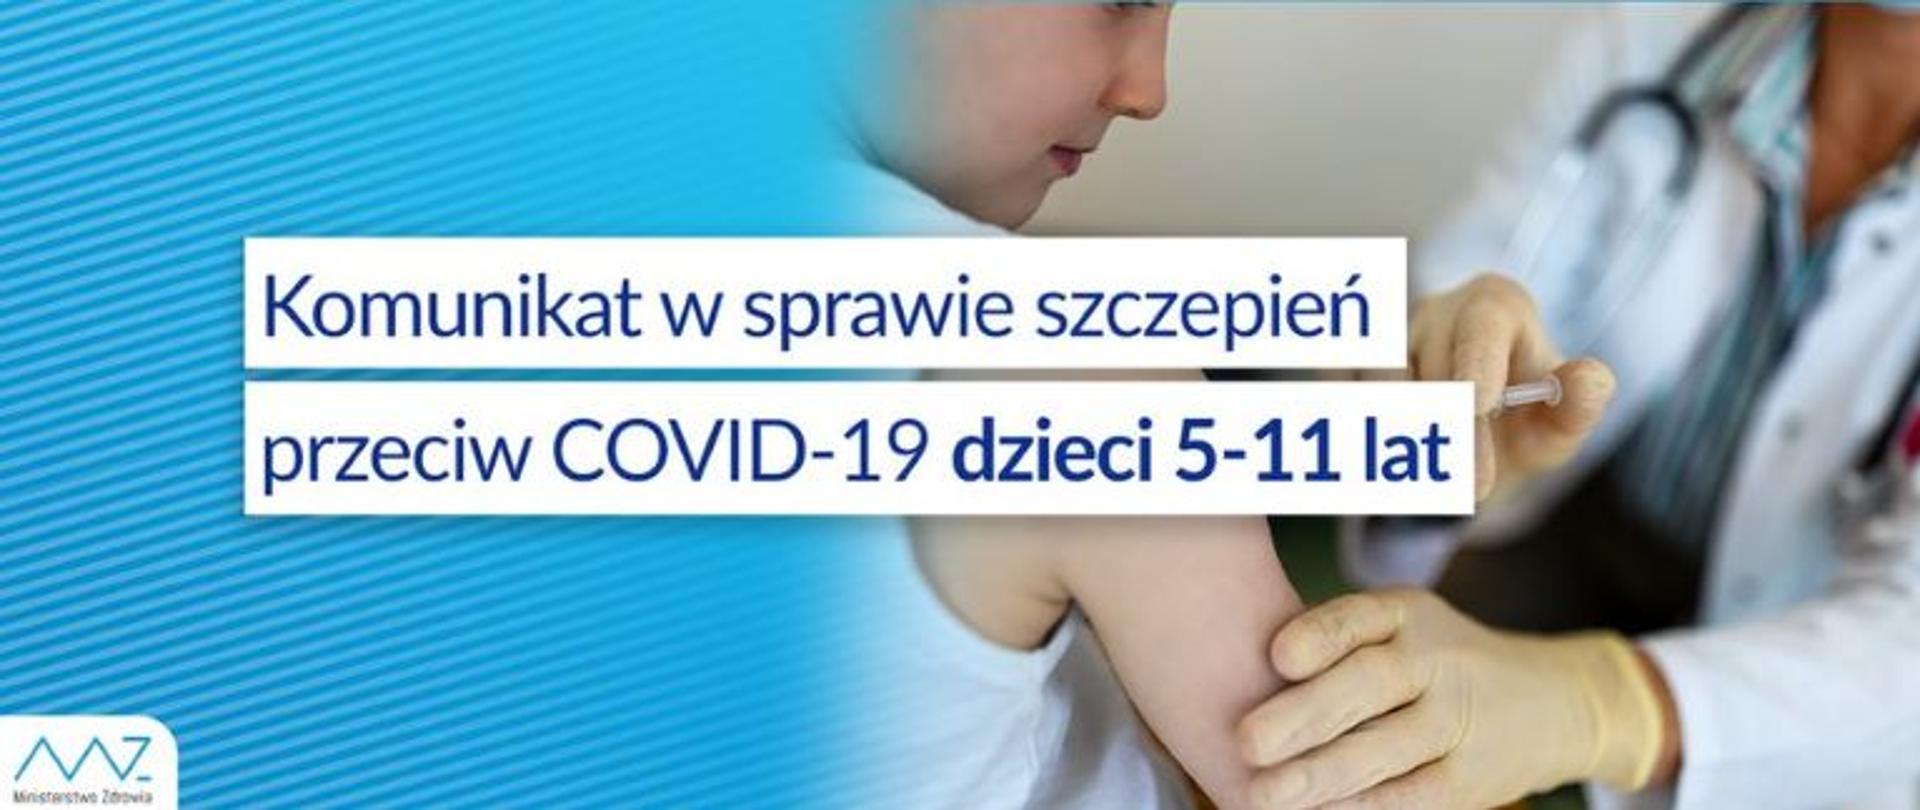 Komunikat w sprawie szczepień przeciw COVID-19 dzieci 5-11 lat